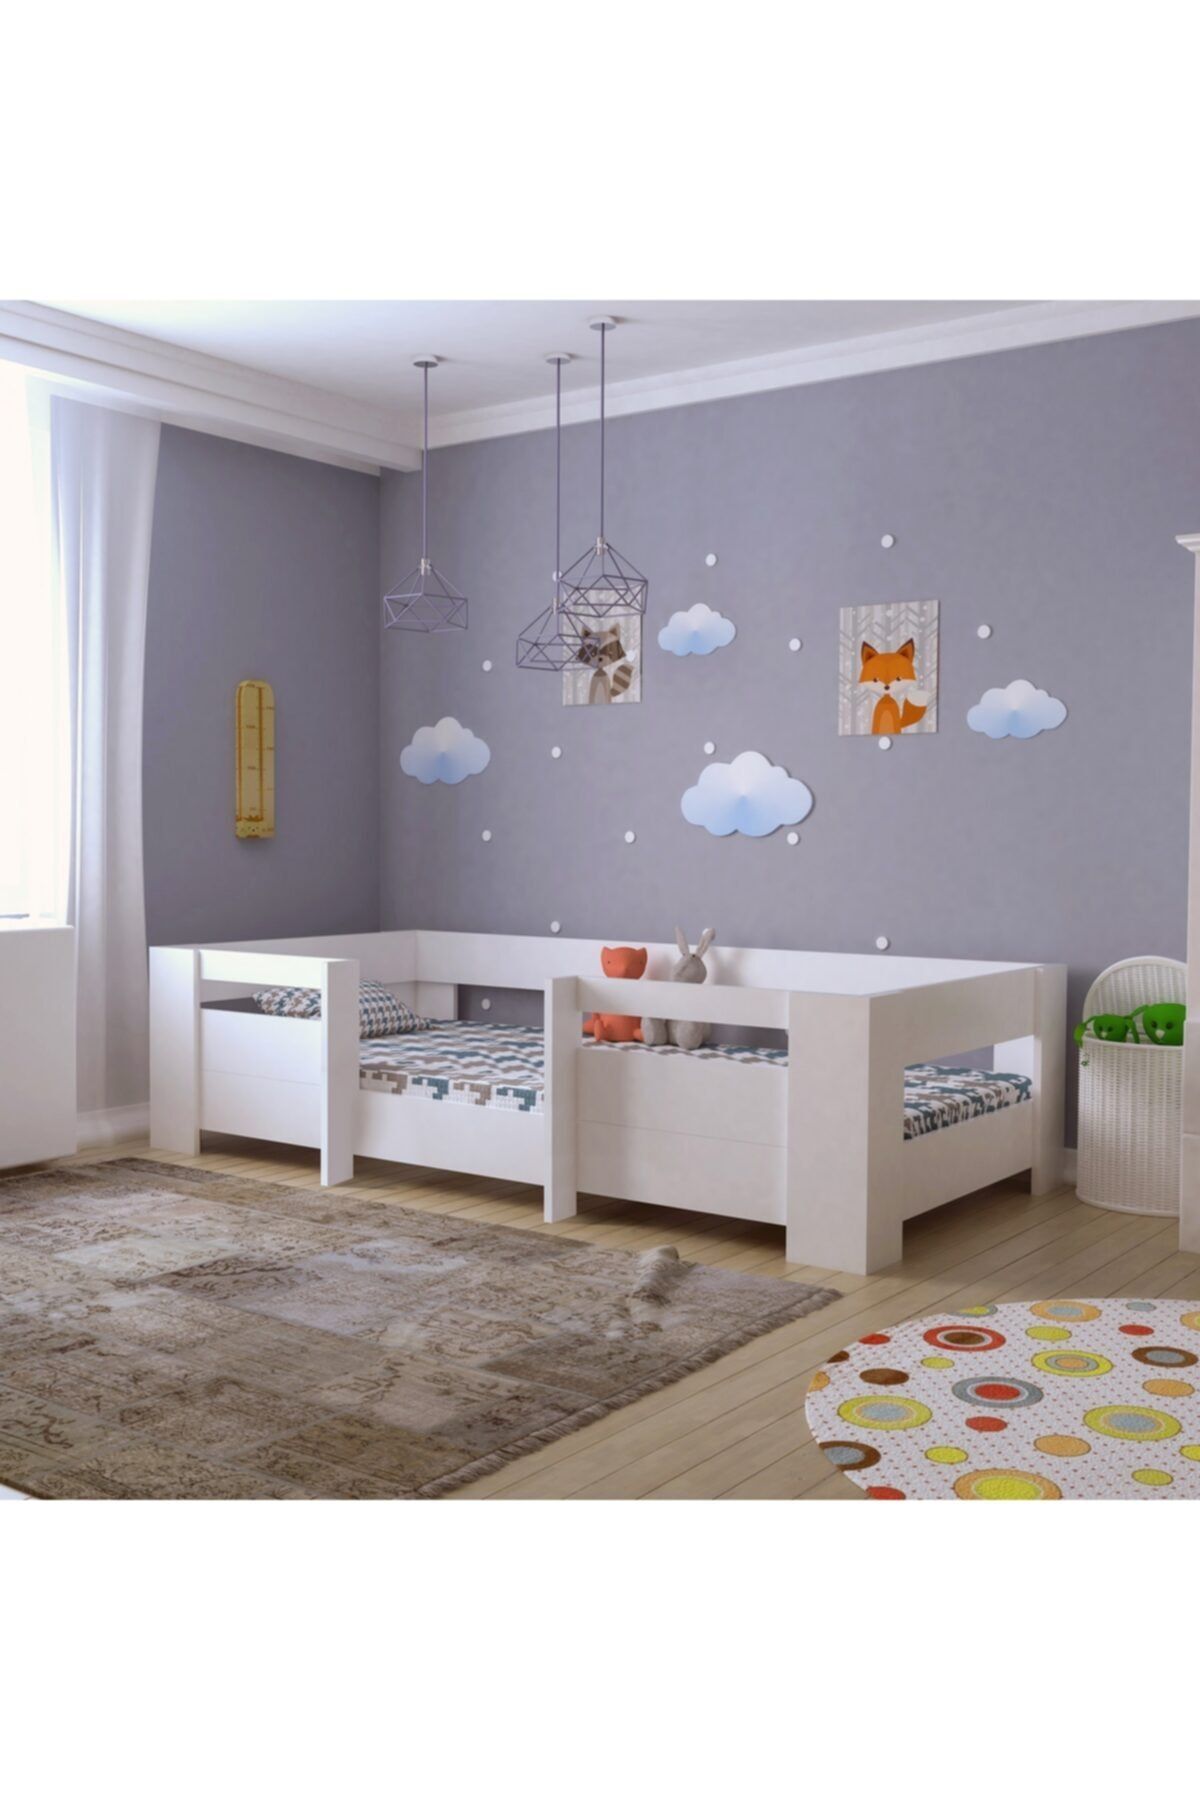 Myniture Ninnimo Bebek Odası Yatağı Montessori Mdf Beyaz 90x190 Yatak Uyumlu Mm5 Karyola